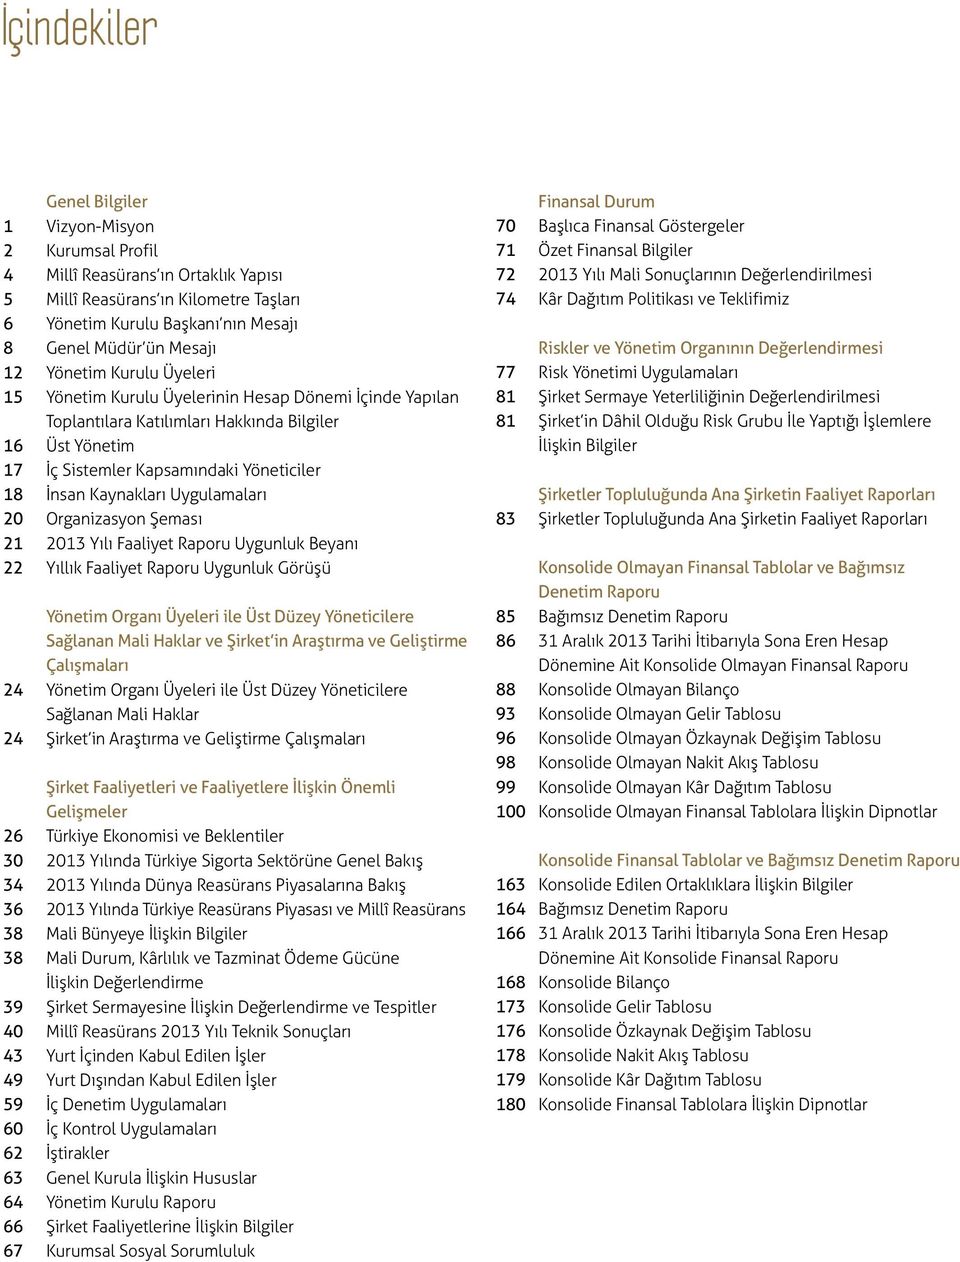 Uygulamaları 20 Organizasyon Şeması 21 2013 Yılı Faaliyet Raporu Uygunluk Beyanı 22 Yıllık Faaliyet Raporu Uygunluk Görüşü Yönetim Organı Üyeleri ile Üst Düzey Yöneticilere Sağlanan Mali Haklar ve